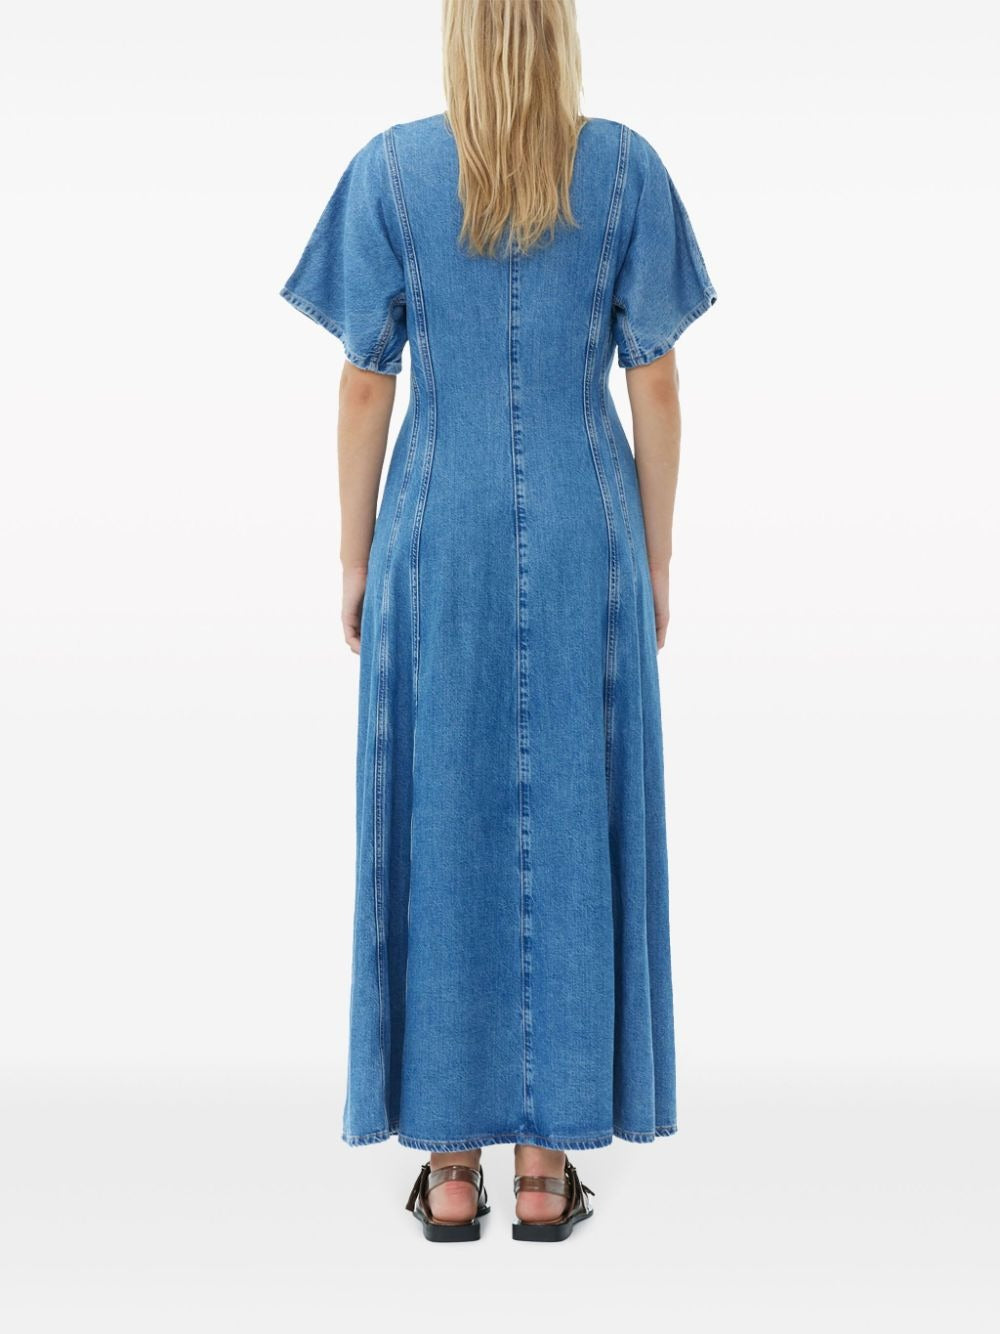 Ganni Future Denim Maxi Dress in Mid Blue Stone